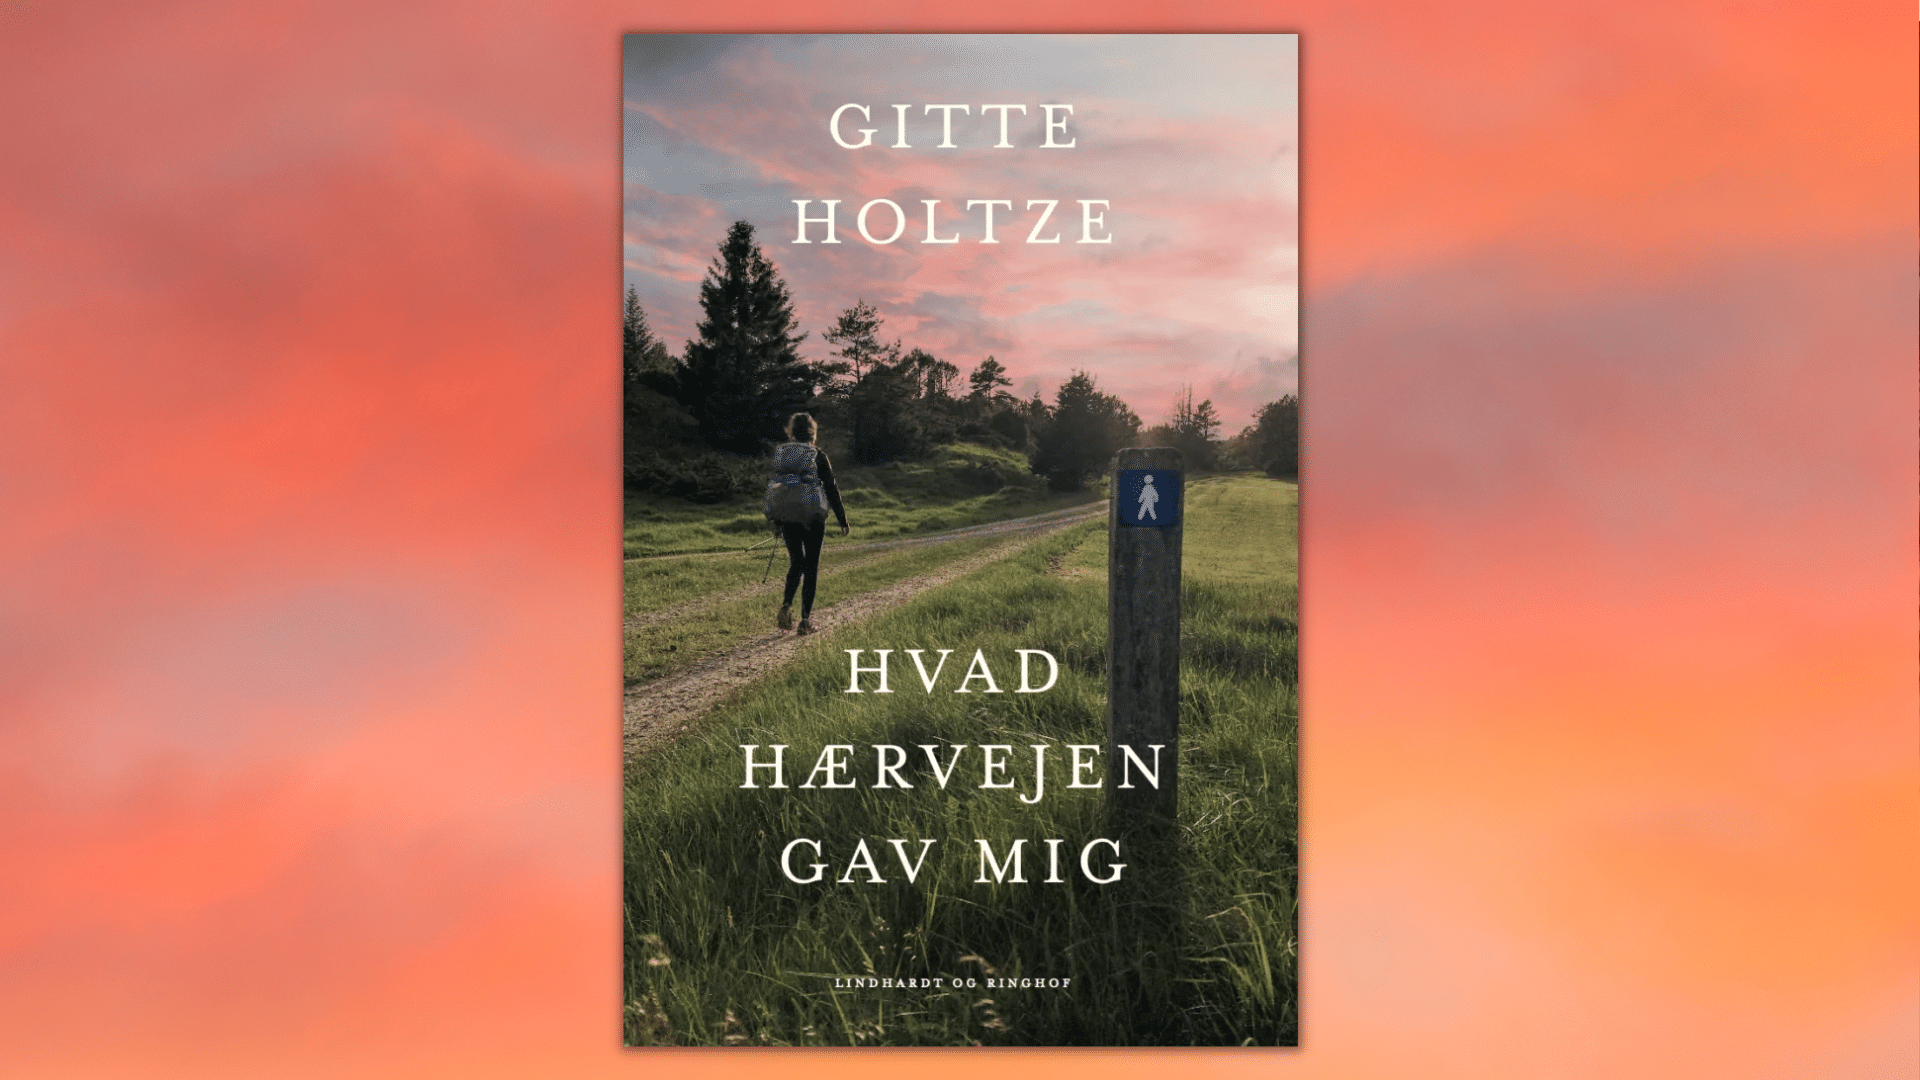 hærvejen, Hvad hærvejen lærte mig, Gitte Holtze, gode bøger, hiking, terapi